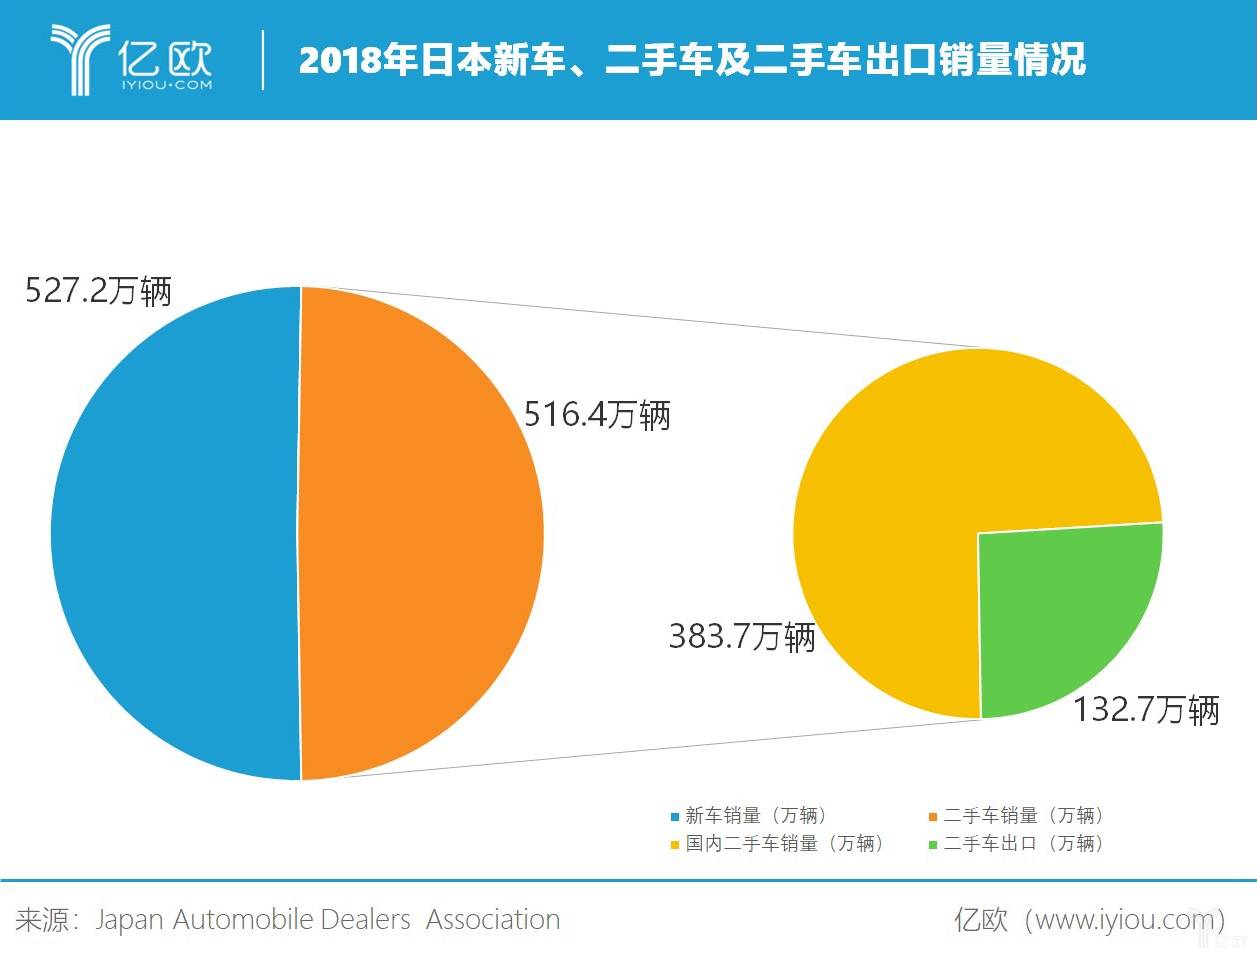 2018年日本新车、二手车及二手车出口销量情况